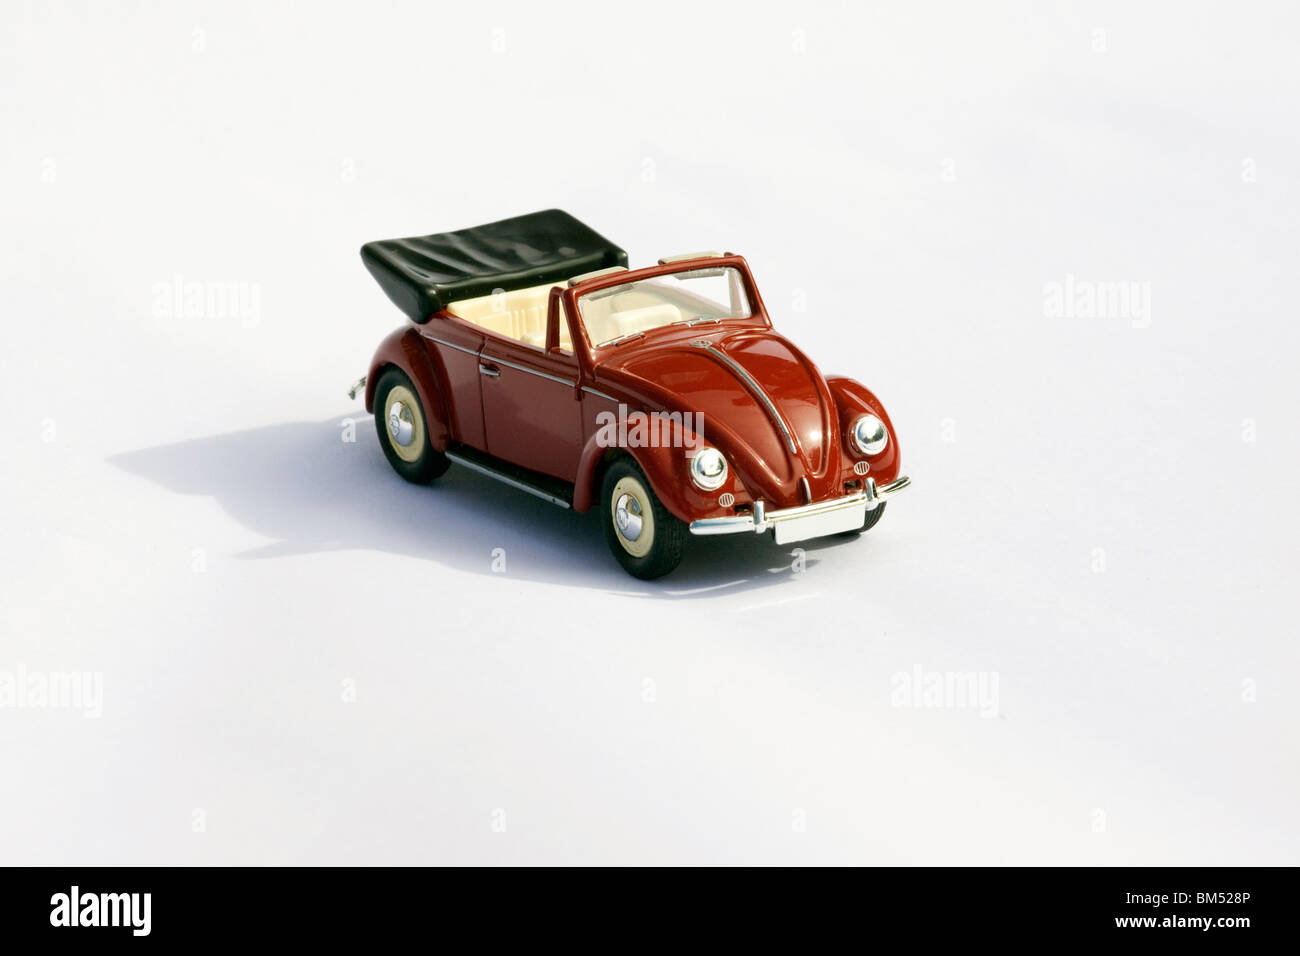 Sammlerstück Druckguss Spielzeugmodell des Volkswagen Käfer Cabrio auf weißem Hintergrund Stockfoto